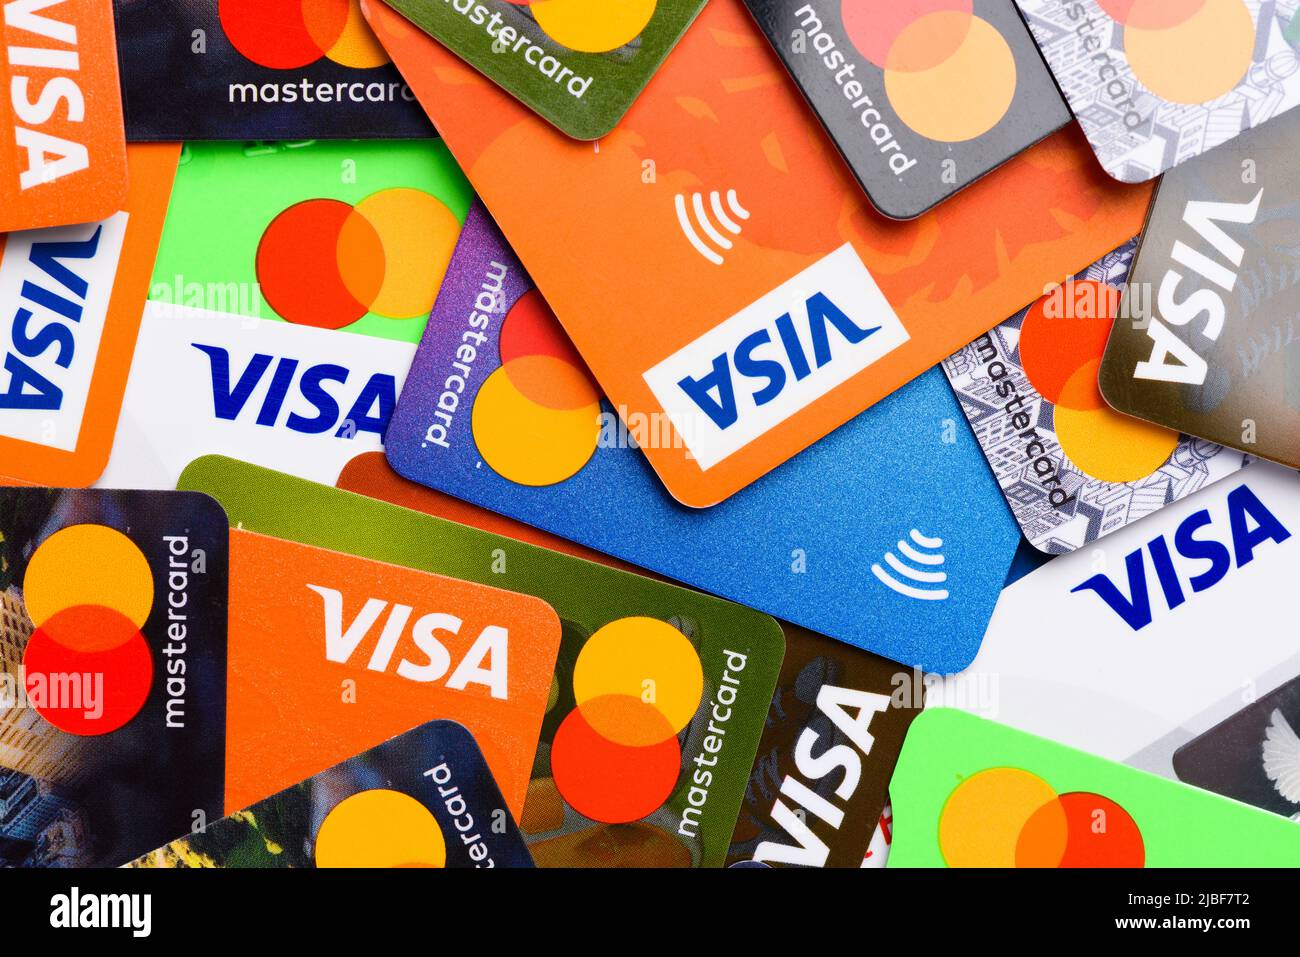 Krakau, Polen - April 27 2022: Visa und MasterCard Plastikkarten mit kontaktlosem Bezahlsymbol Draufsicht Stockfoto